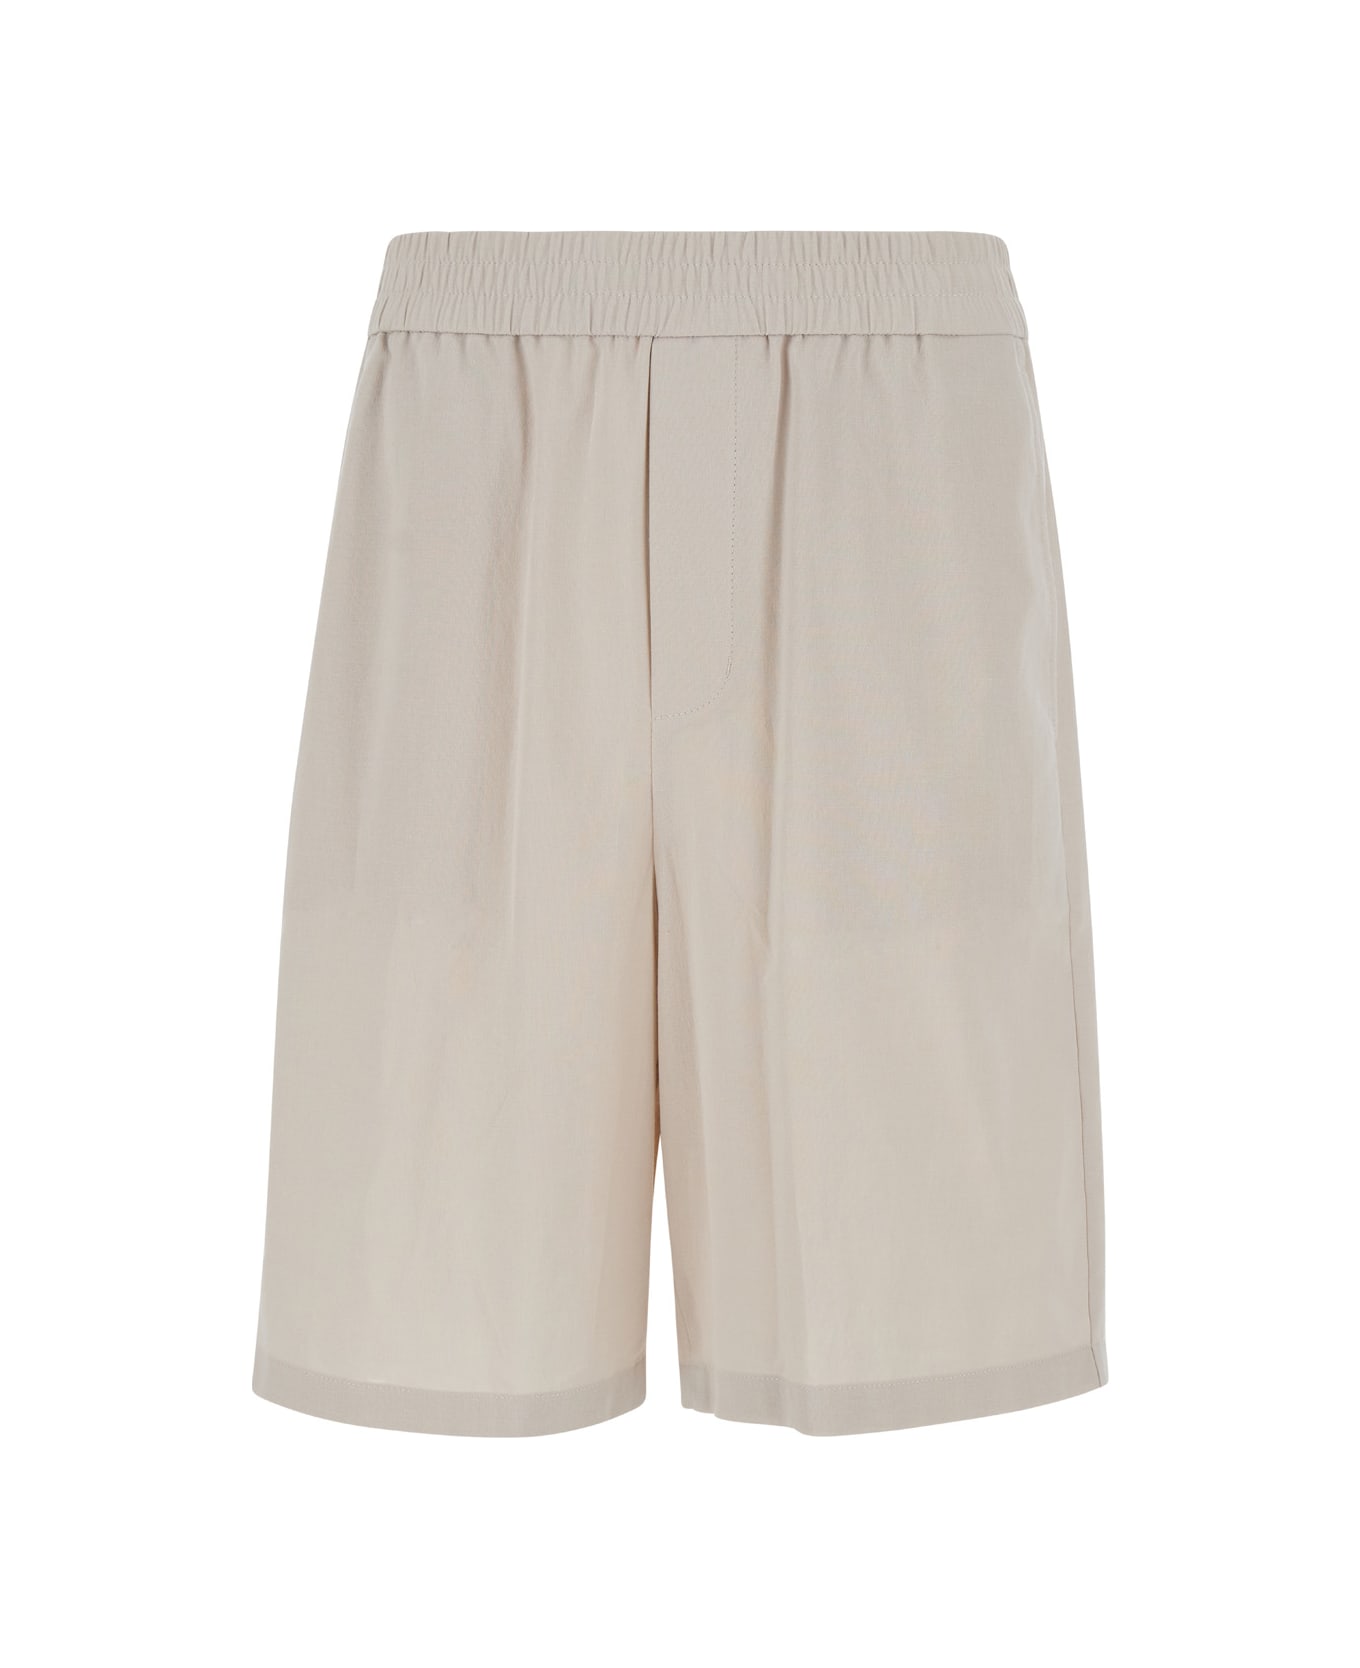 Ami Alexandre Mattiussi Beige Elastic Bermuda Shorts In Cotton Man - Beige